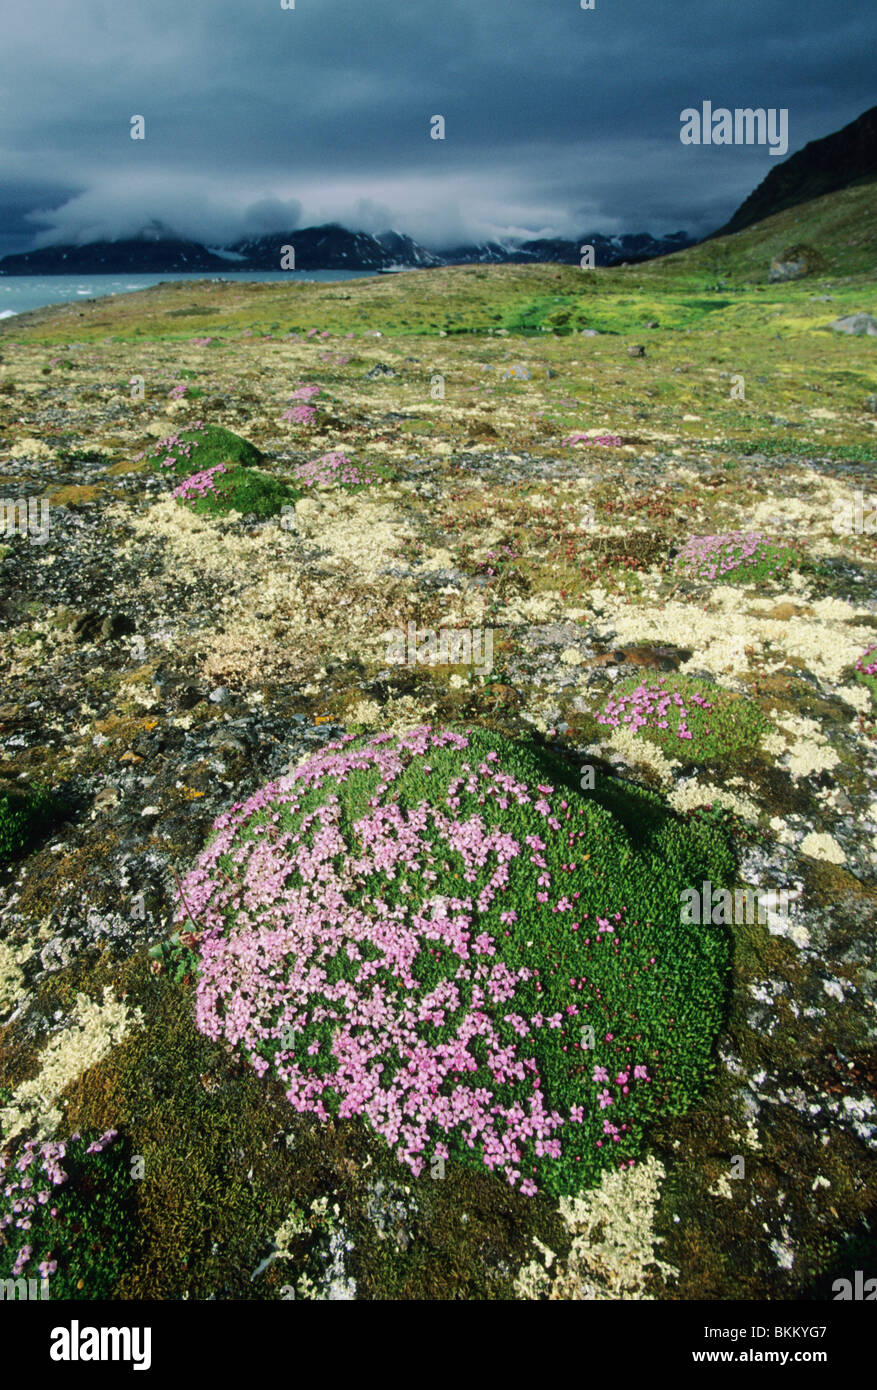 Norvegia Isole Svalbard, Kongsfjord, tundra in Bloom, Sassifraga viola e altri fiori. Foto Stock